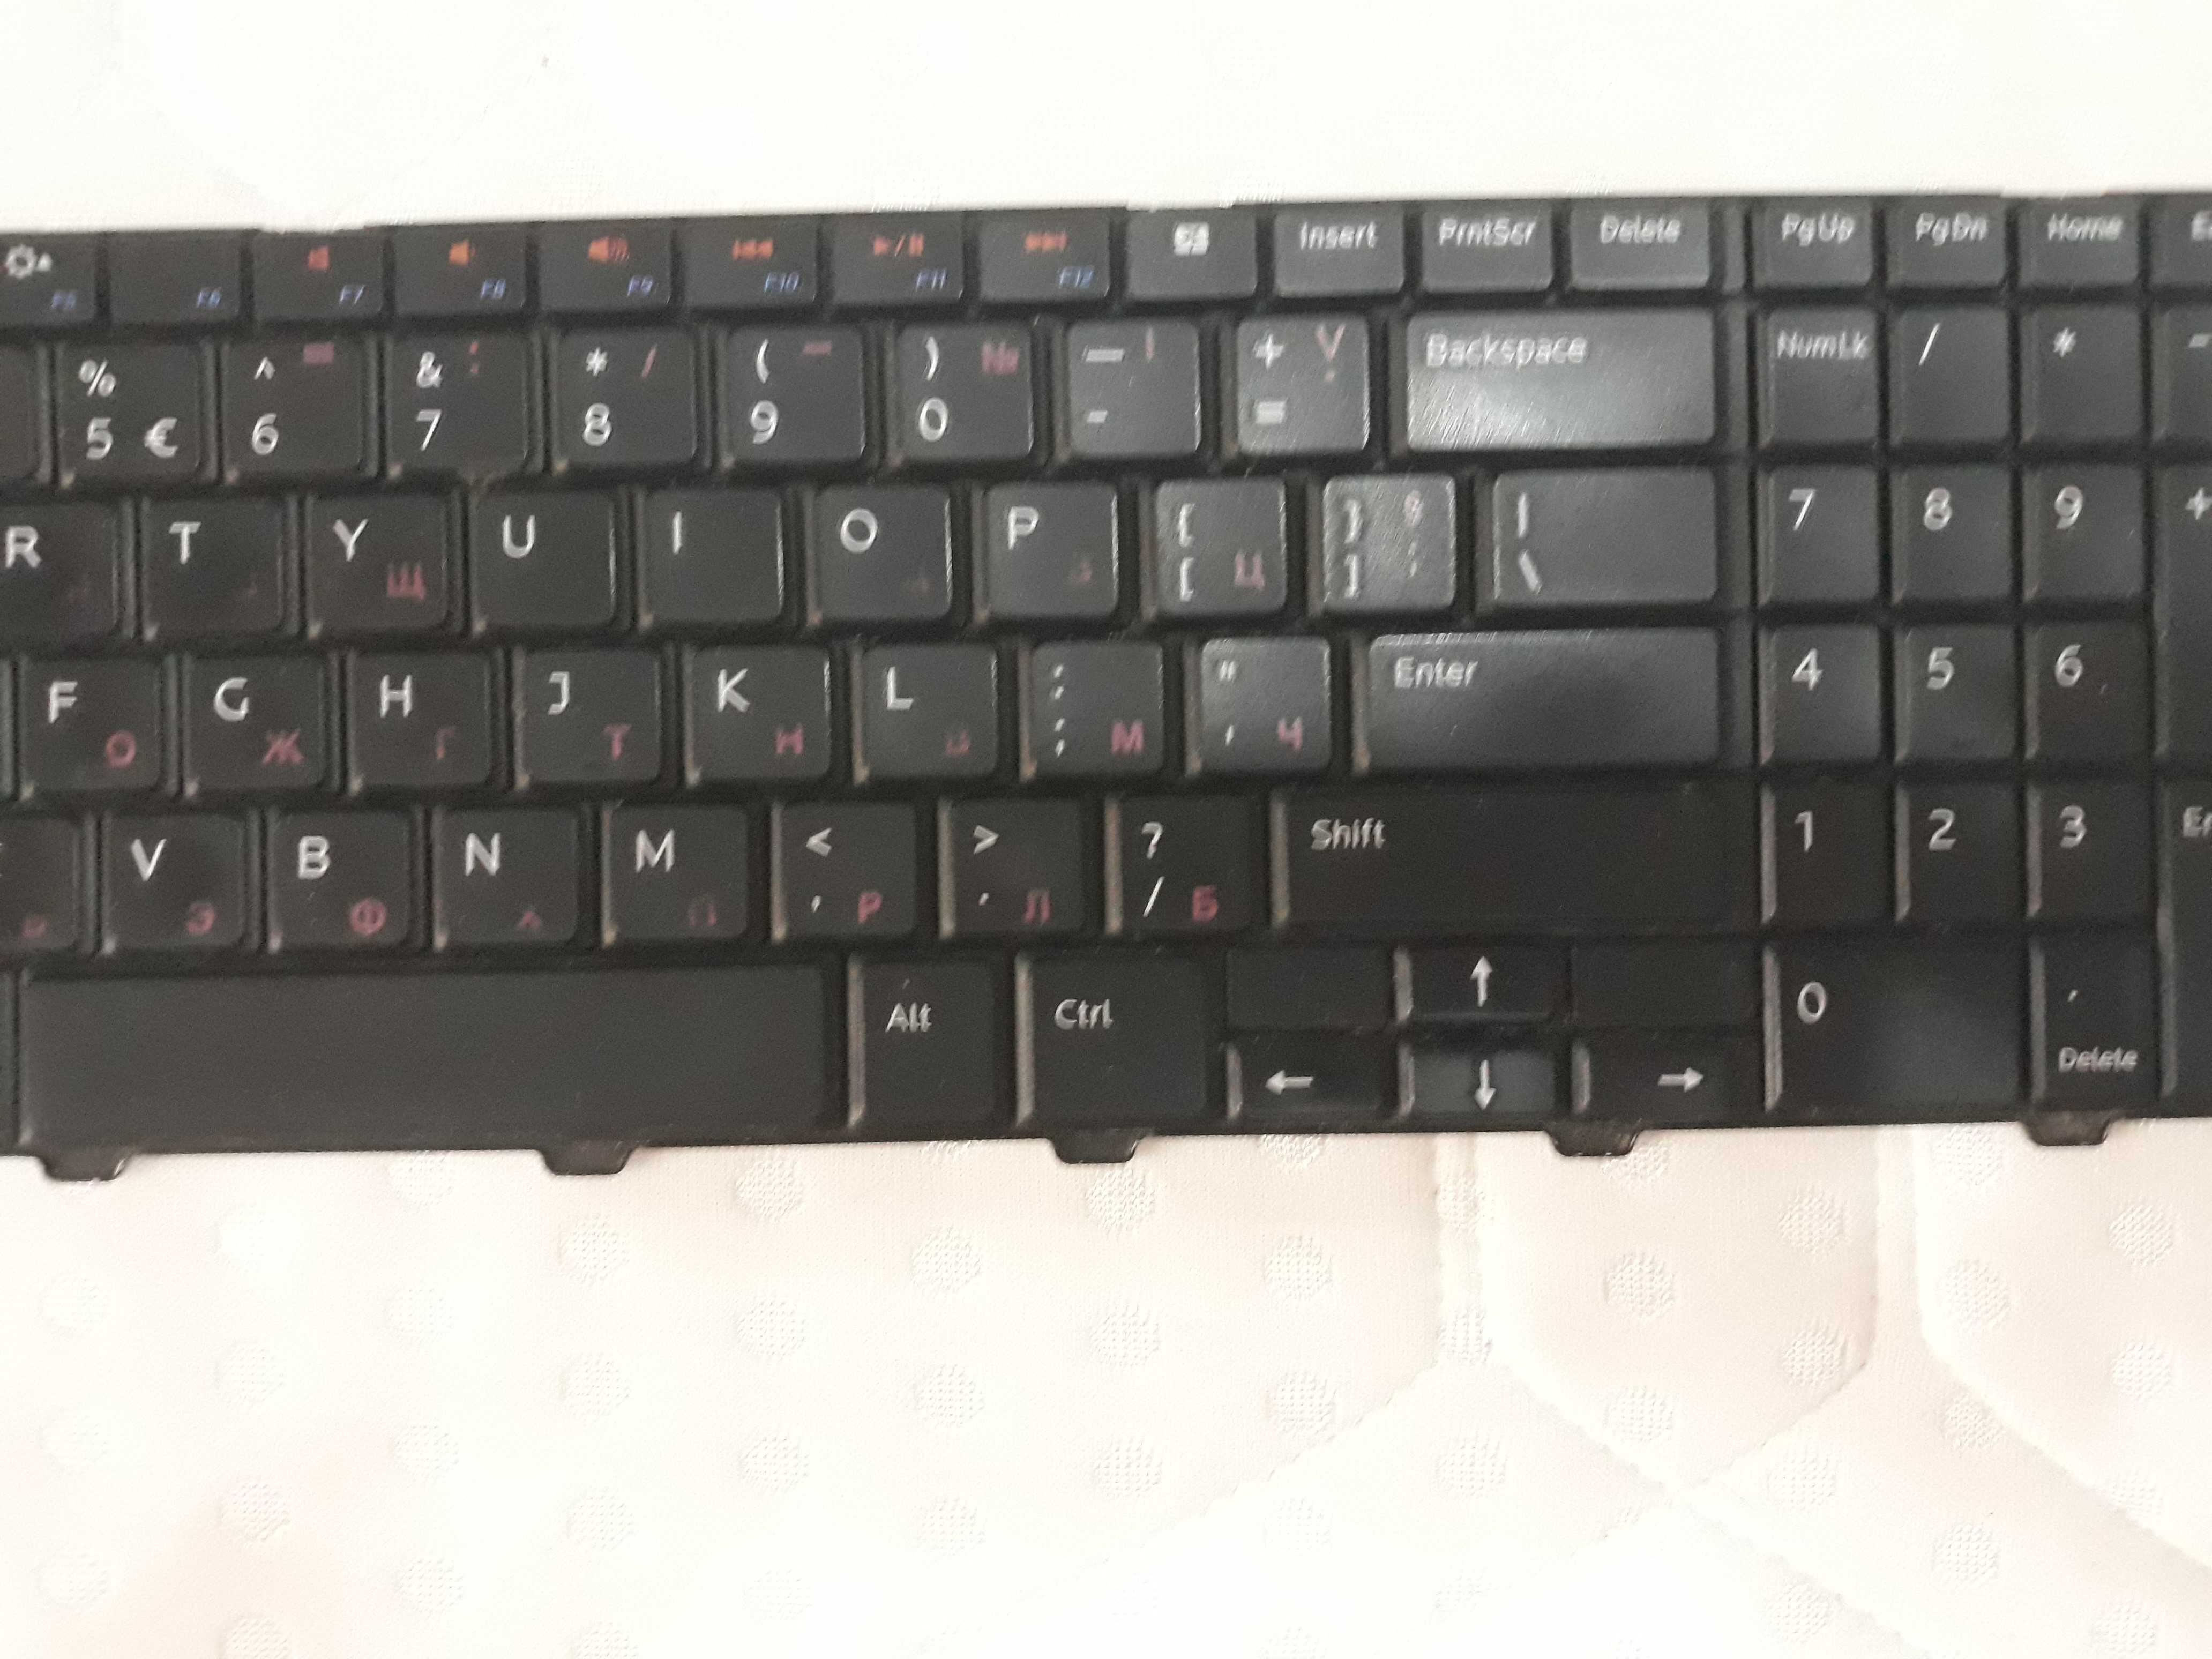 Tastatura laptop Dell cu alfabetul rus chirilic